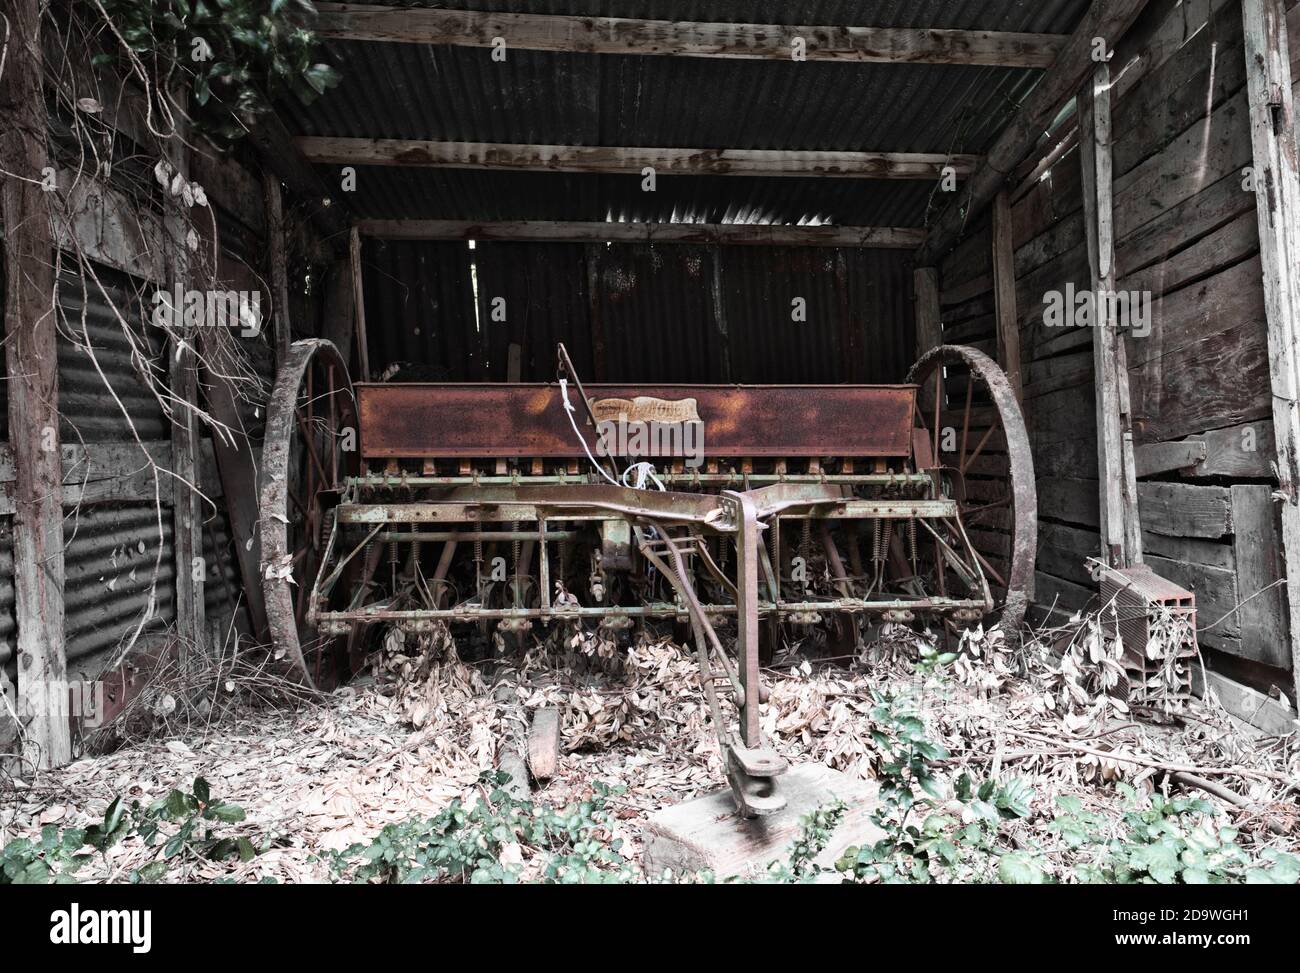 Ancienne graine mécanique abandonnée dans une grange en bois. Métal rouillé. Pneus sans roues. Outil agricole abandonné et abandonné, Banque D'Images